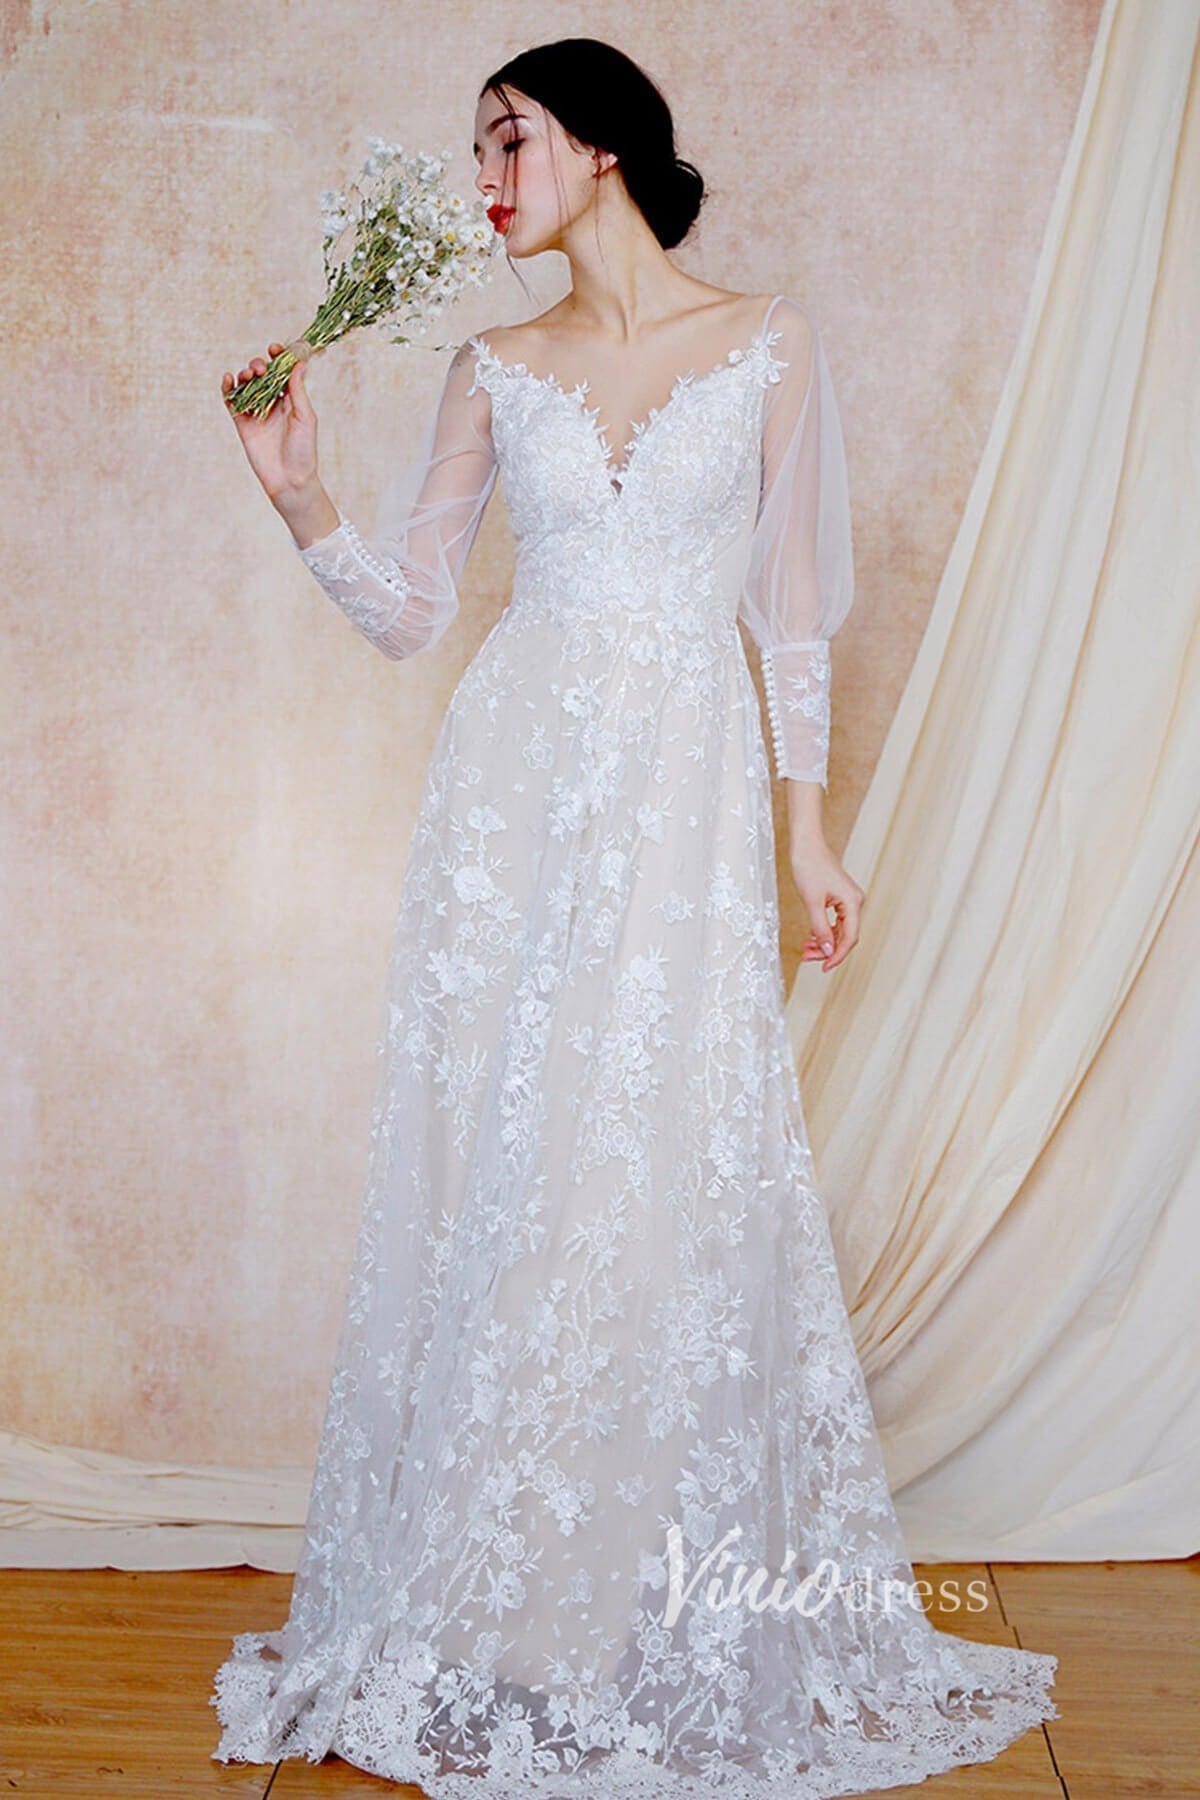 A-line Lace Boho Wedding Dresses Long Sleeve Bridal Dress VW2203-wedding dresses-Viniodress-Viniodress